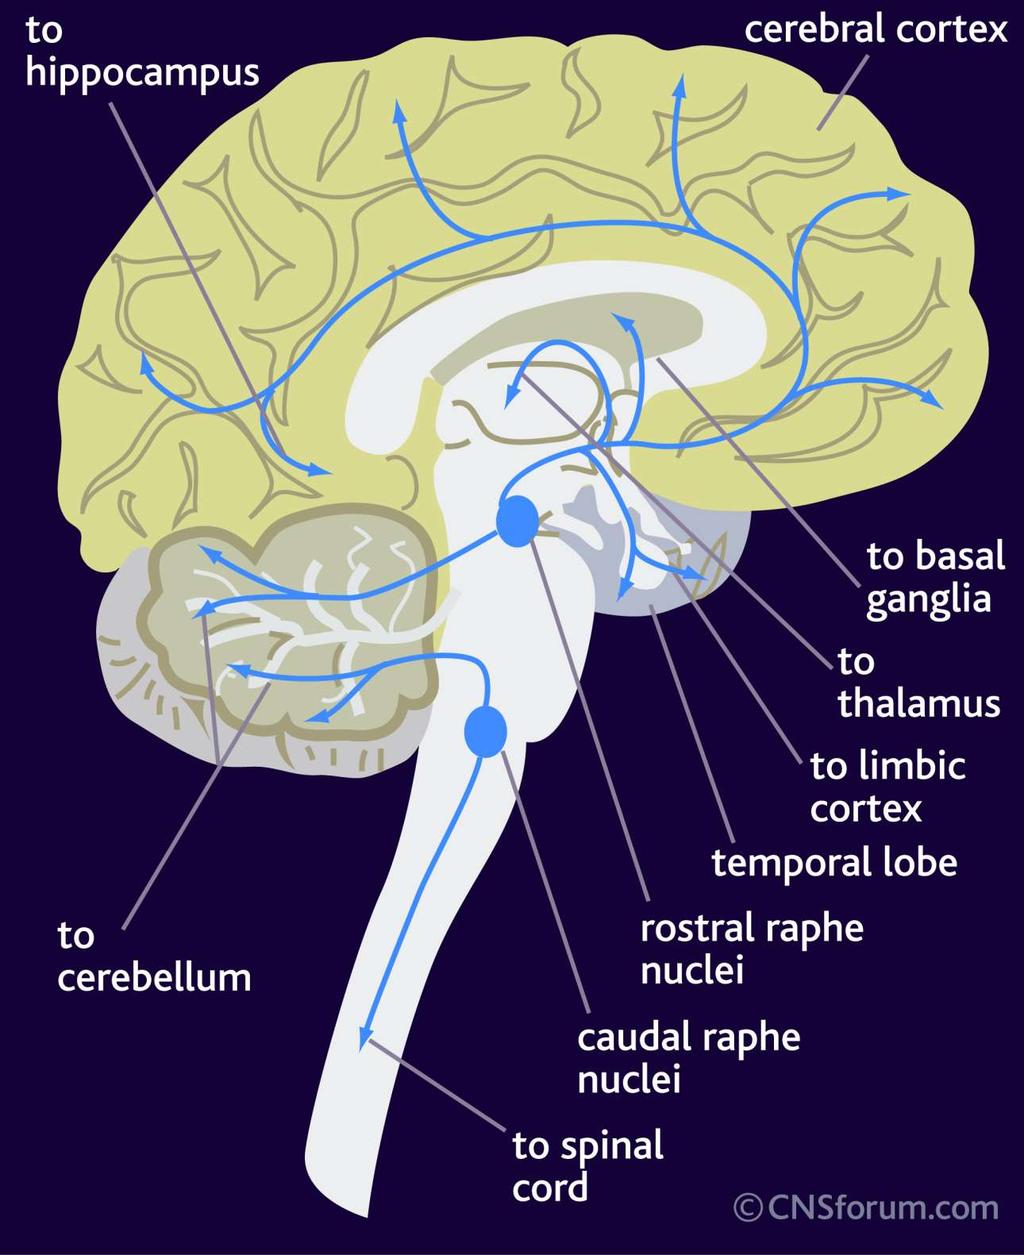 Serotonergiset radat aivoissa Masennuslääkeiden vaikutusmekanismin kannalta Raphe-tumakkeista